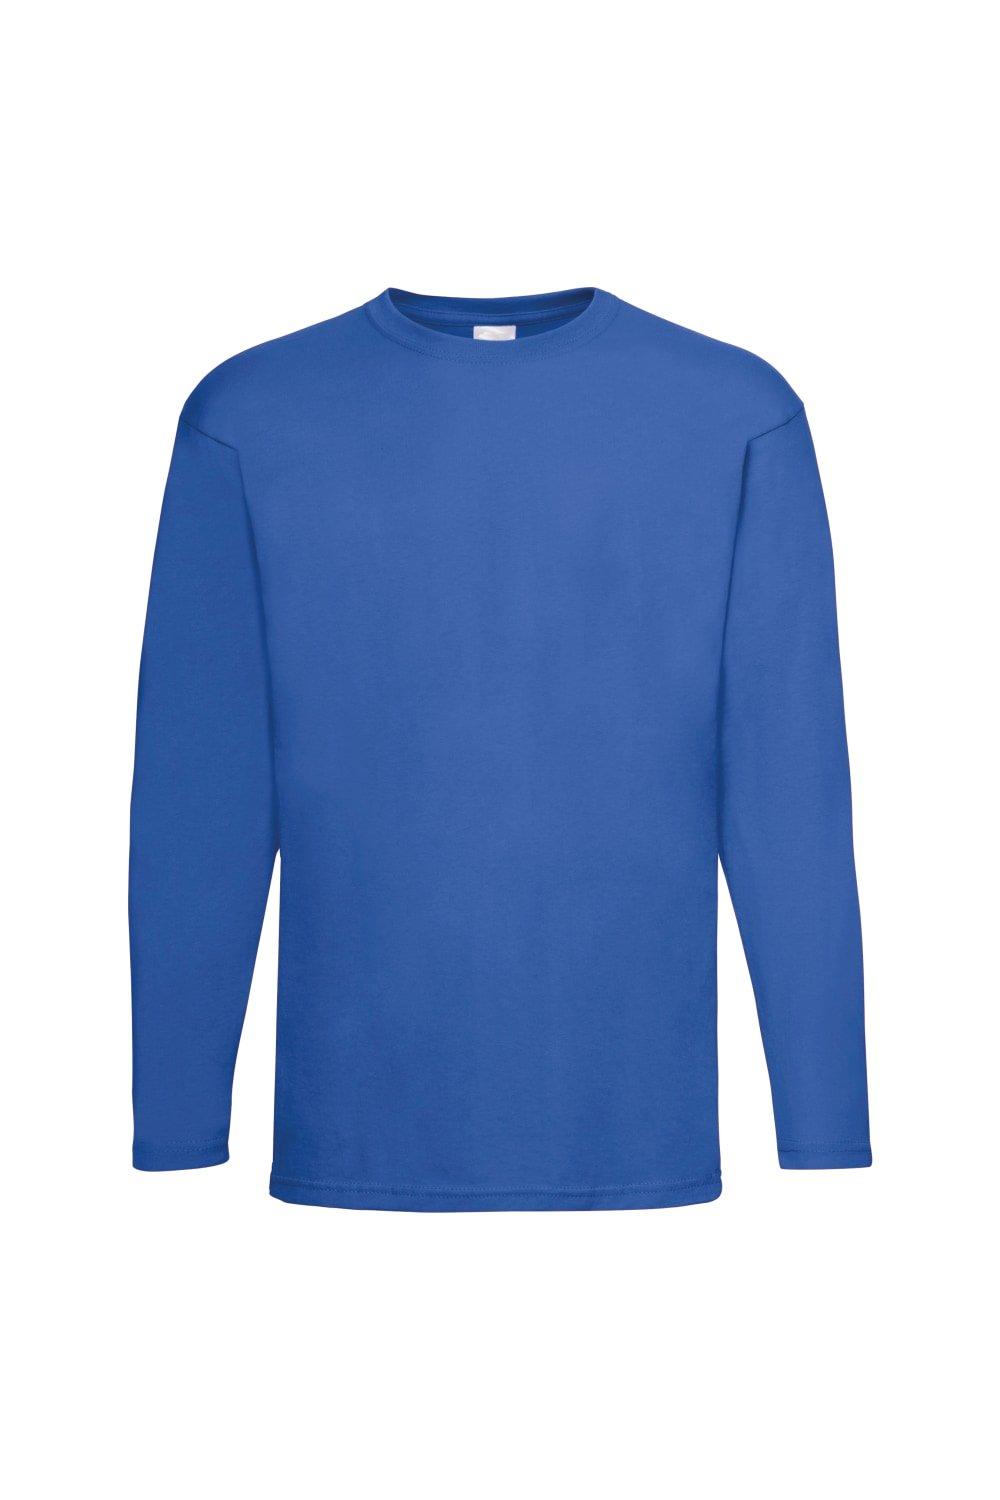 Повседневная футболка Value с длинным рукавом Universal Textiles, синий мужская футболка йога 2xl серый меланж